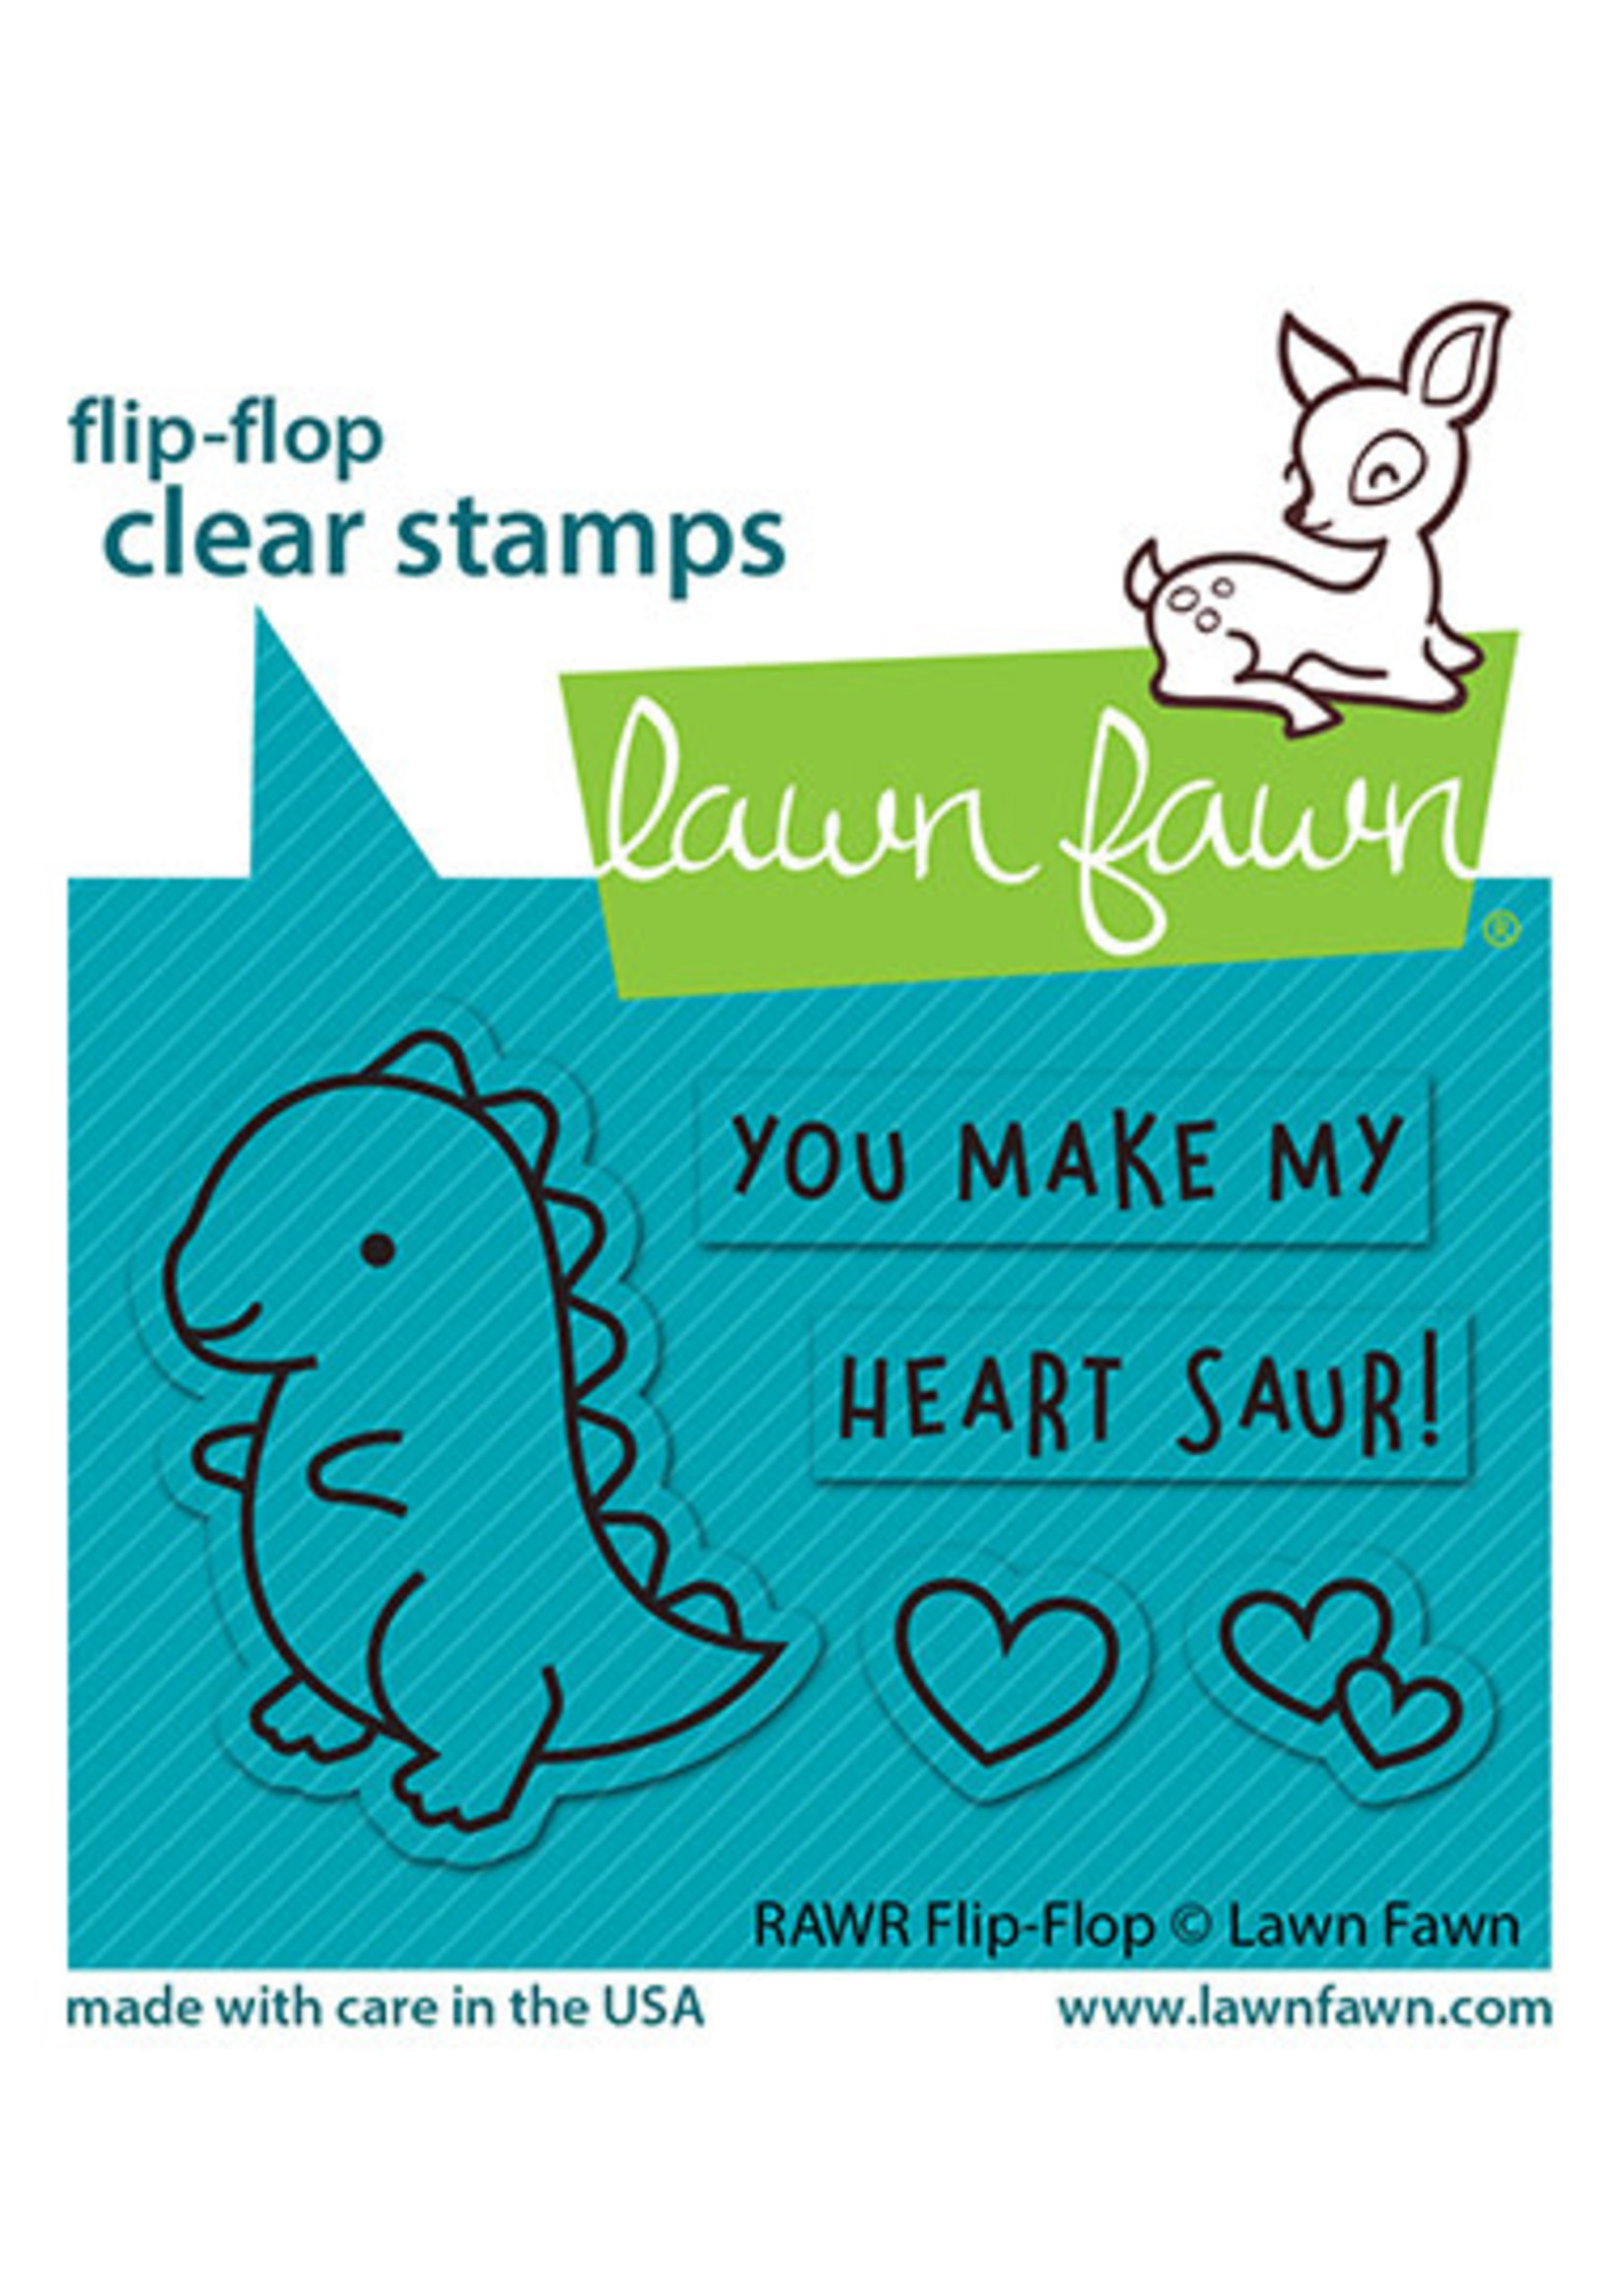 Lawn Fawn RAWR flip-flop stamp